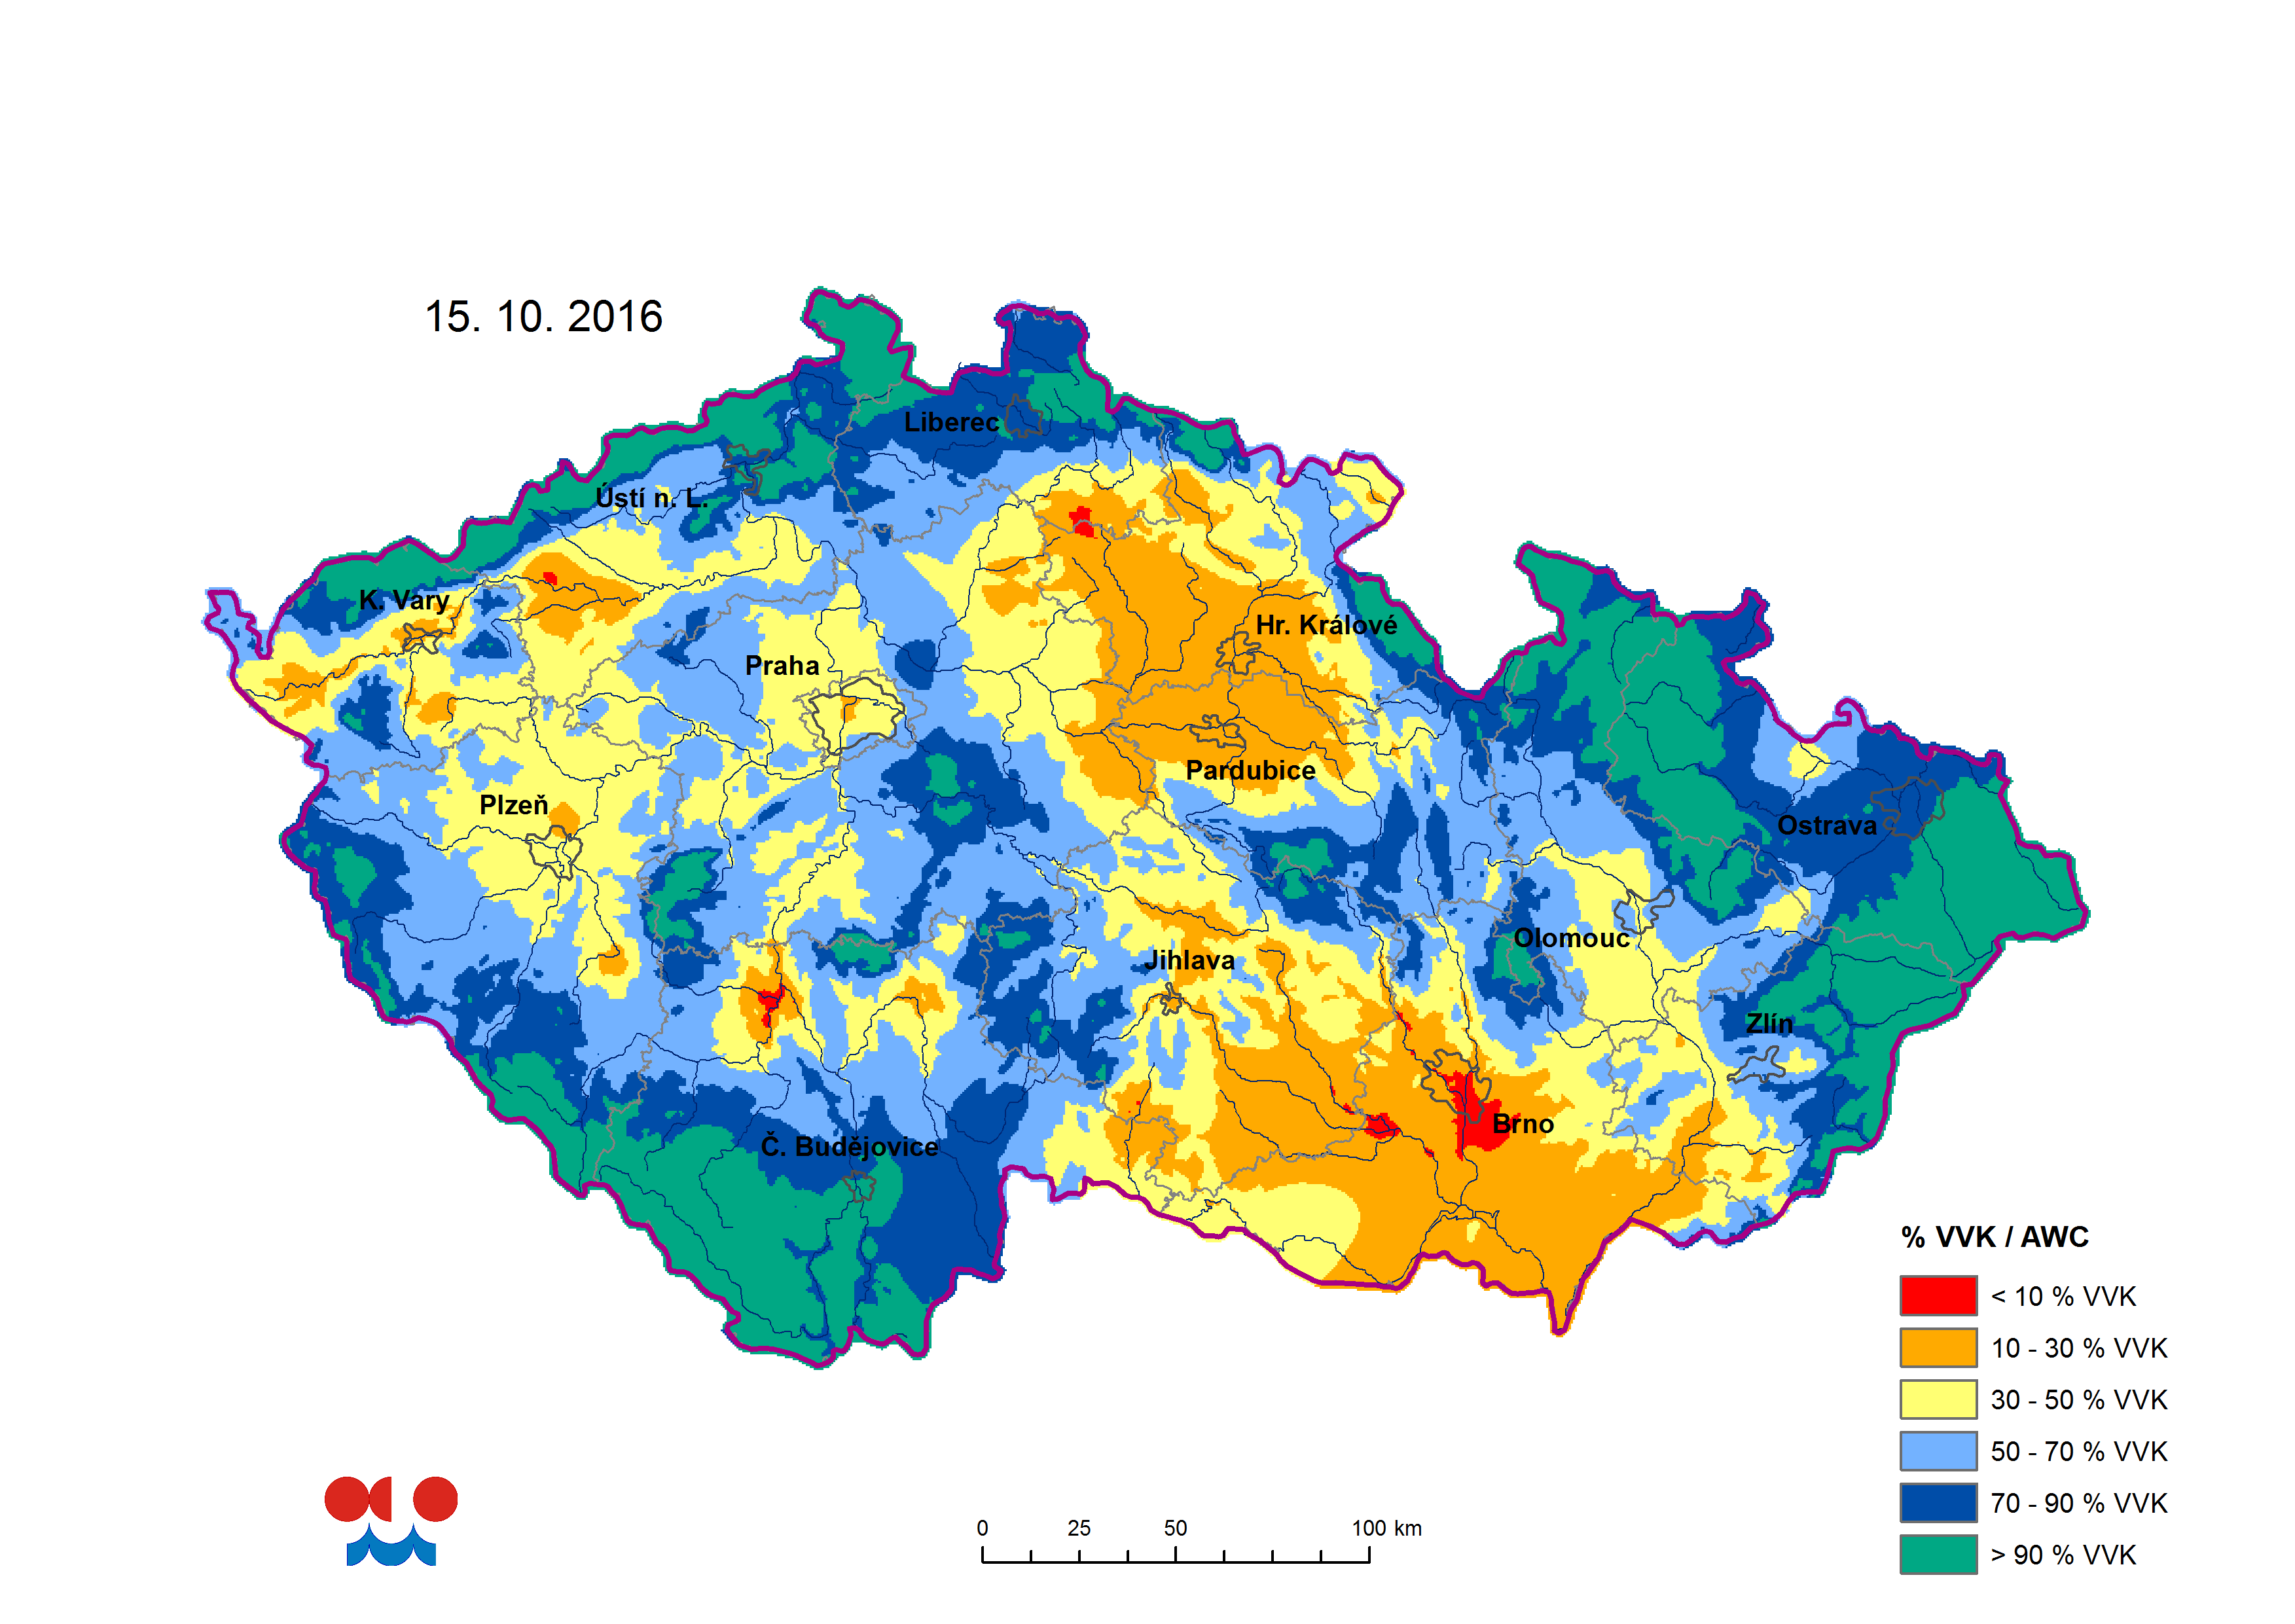 Říjen 2016, nejhorší sucho je v oblasti jižní Moravy, ale ani zbytek území na tom není dobře